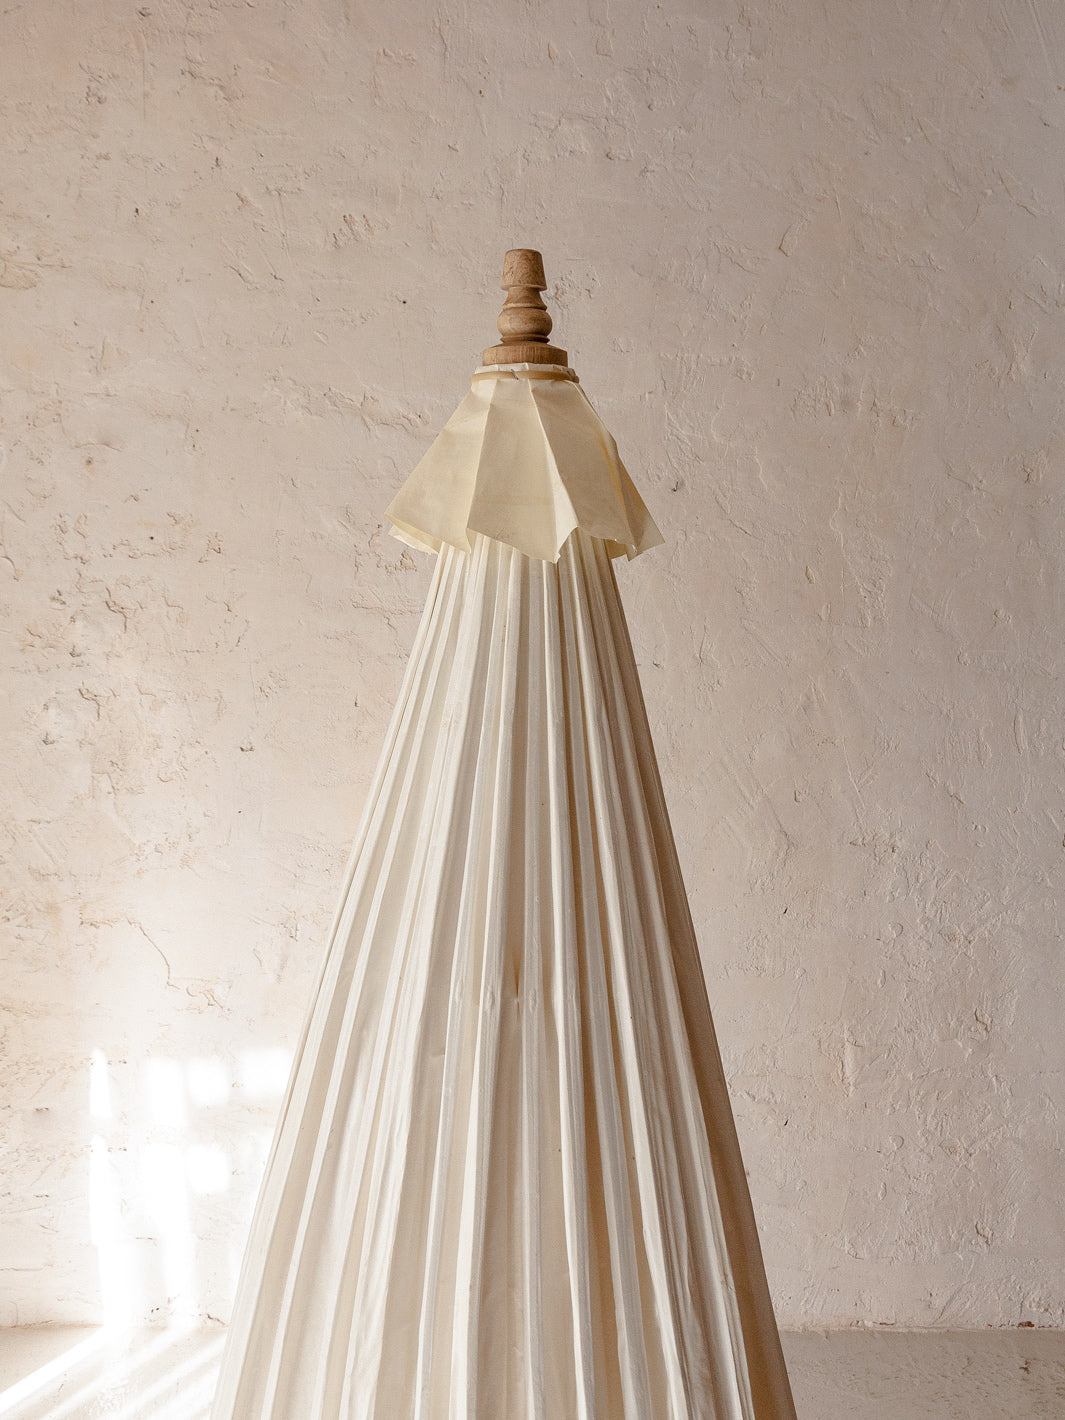 Parapluie en bambou blanc et imperméable